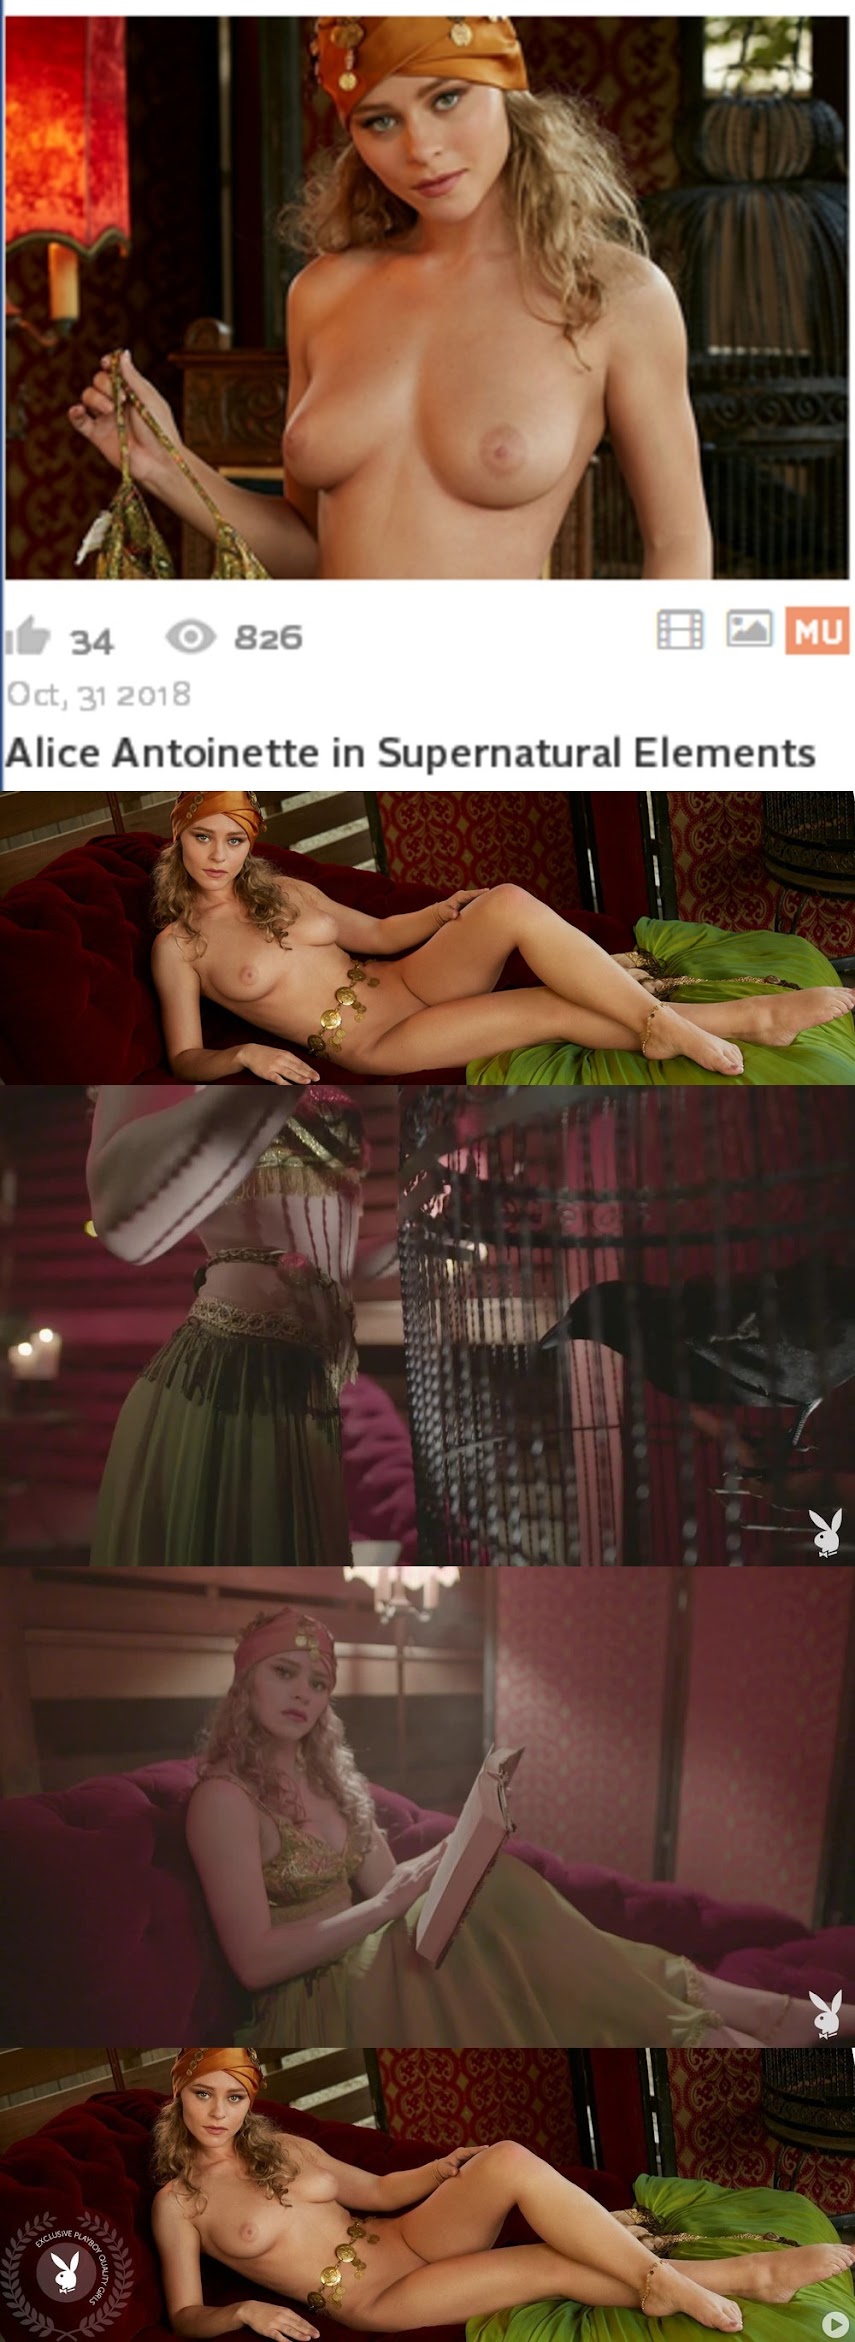 PlayboyPlus2018-10-31_Alice_Antoinette_in_Supernatural_Elements.rar-jk- Playboy PlayboyPlus2018-10-31 Alice Antoinette in Supernatural Elements